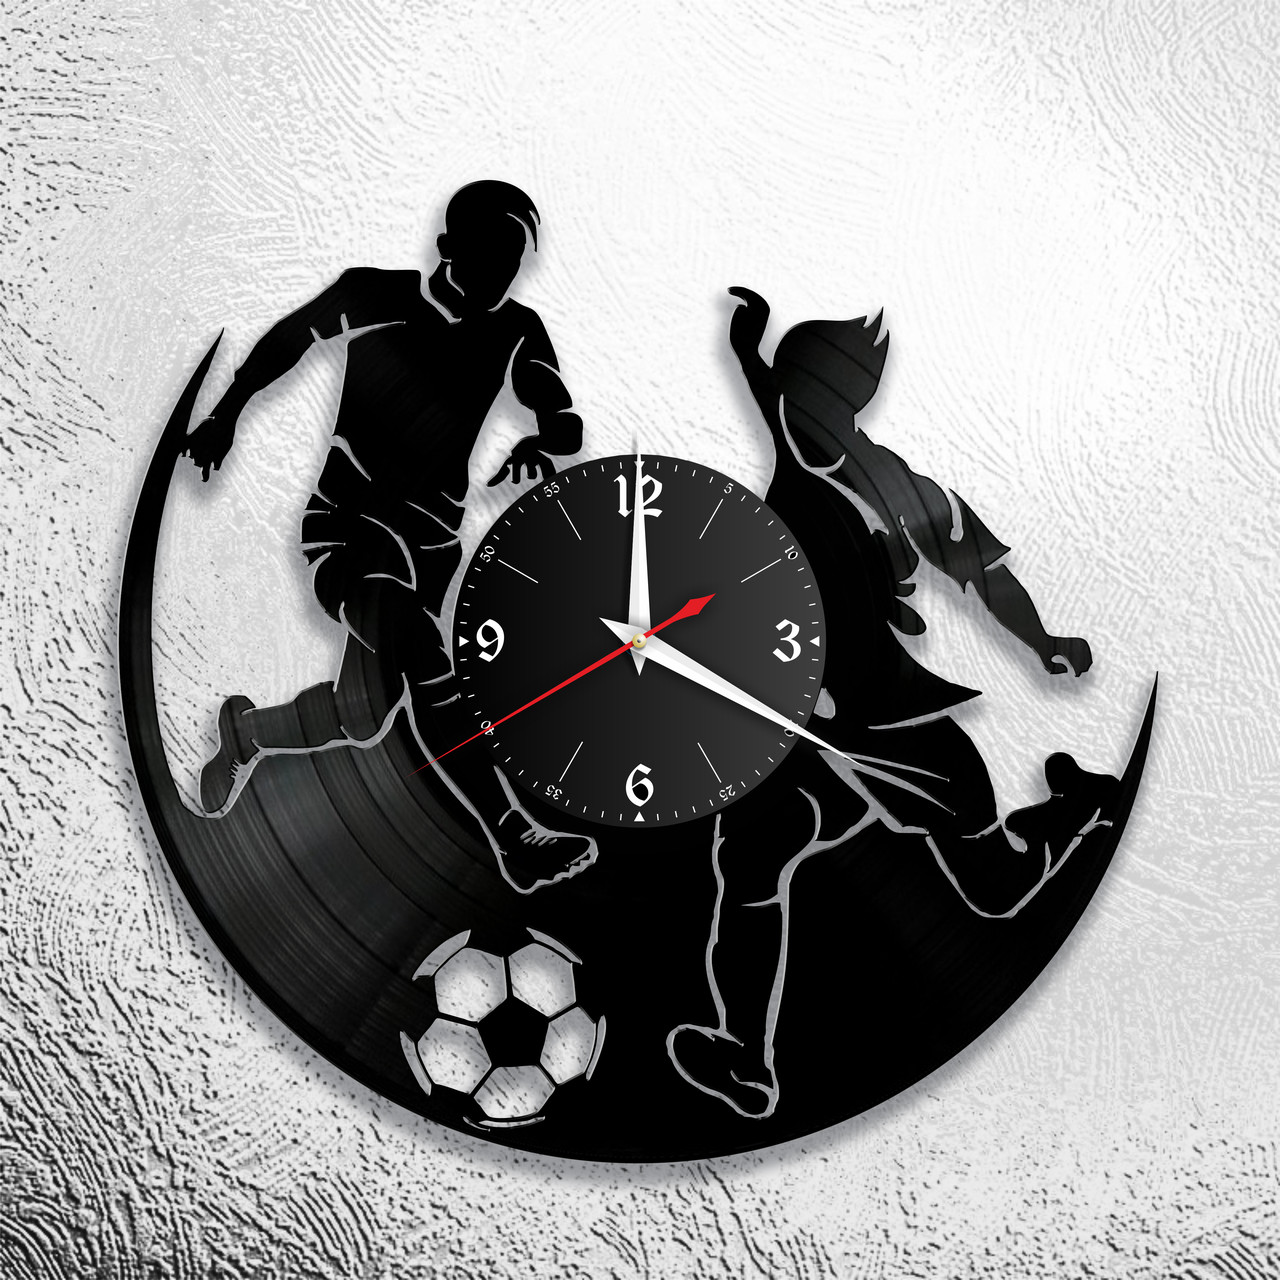 Оригинальные часы из виниловых пластинок  "Футбол" версия 1, фото 1